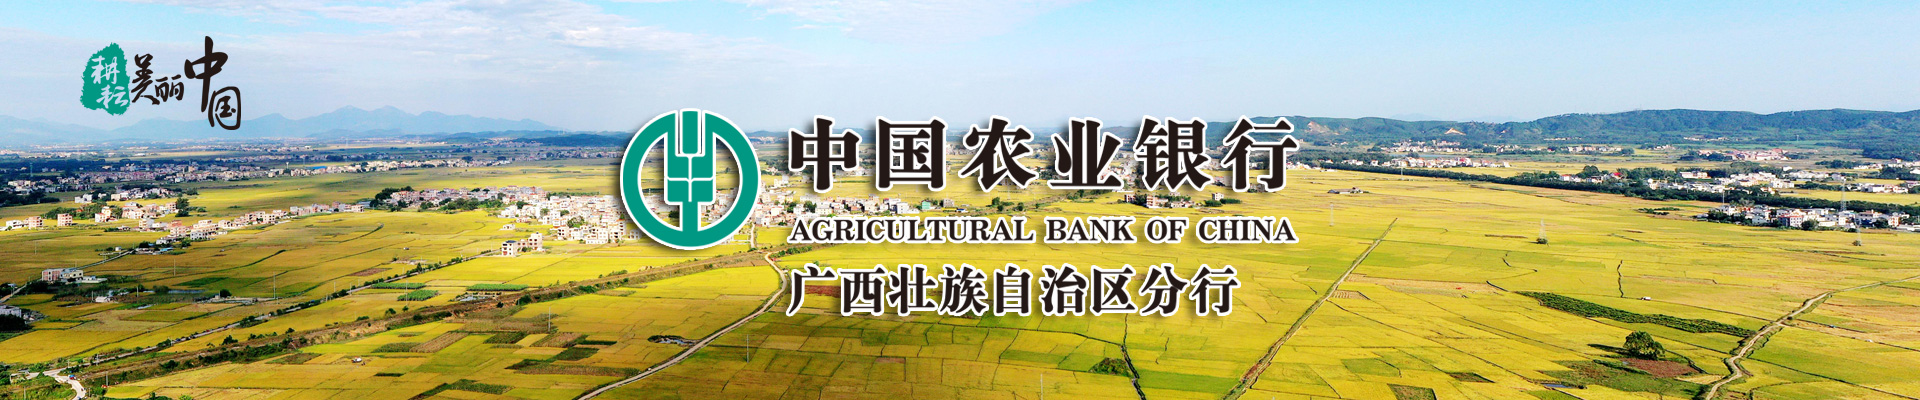 新华网——中国农业银行广西分行网站